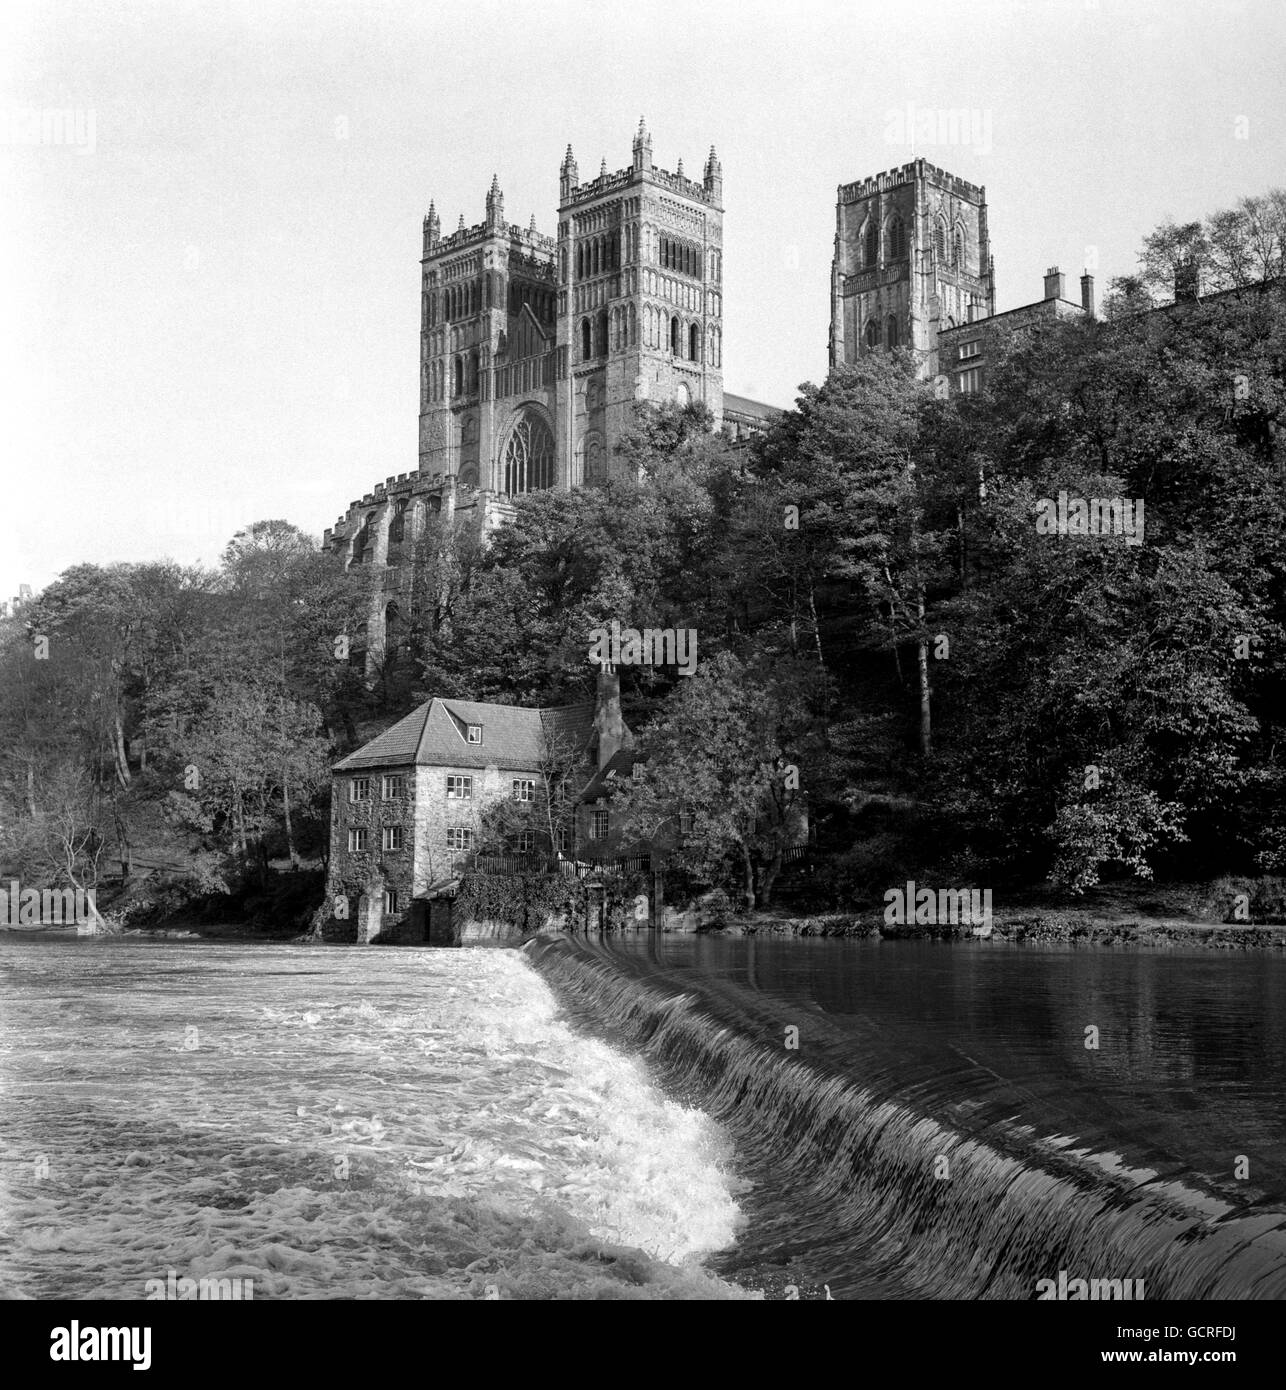 Die Türme der Kathedrale von Durham, mit dem Wehr des Flusses tragen im Vordergrund. Die Cathedral Church of Christ and the Blessed Mary the Virgin wurde zwischen 1093 und 1133 erbaut und beherbergt das Grab eines der ältesten Historiker Englands, des Ehrwürdigen Bede. Stockfoto